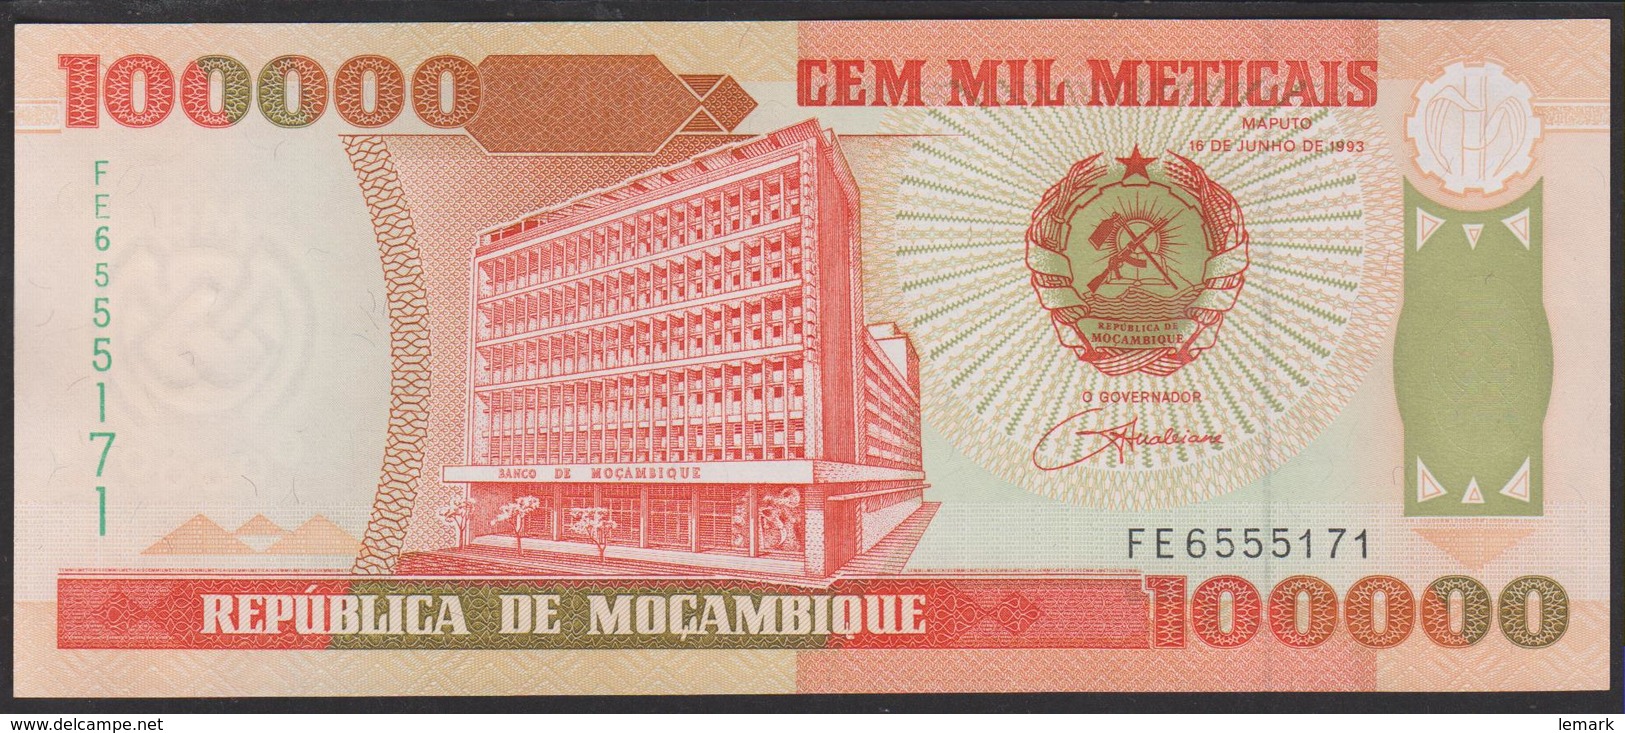 Mozambique 100000 Meticais 1993 P139 UNC - Mozambique